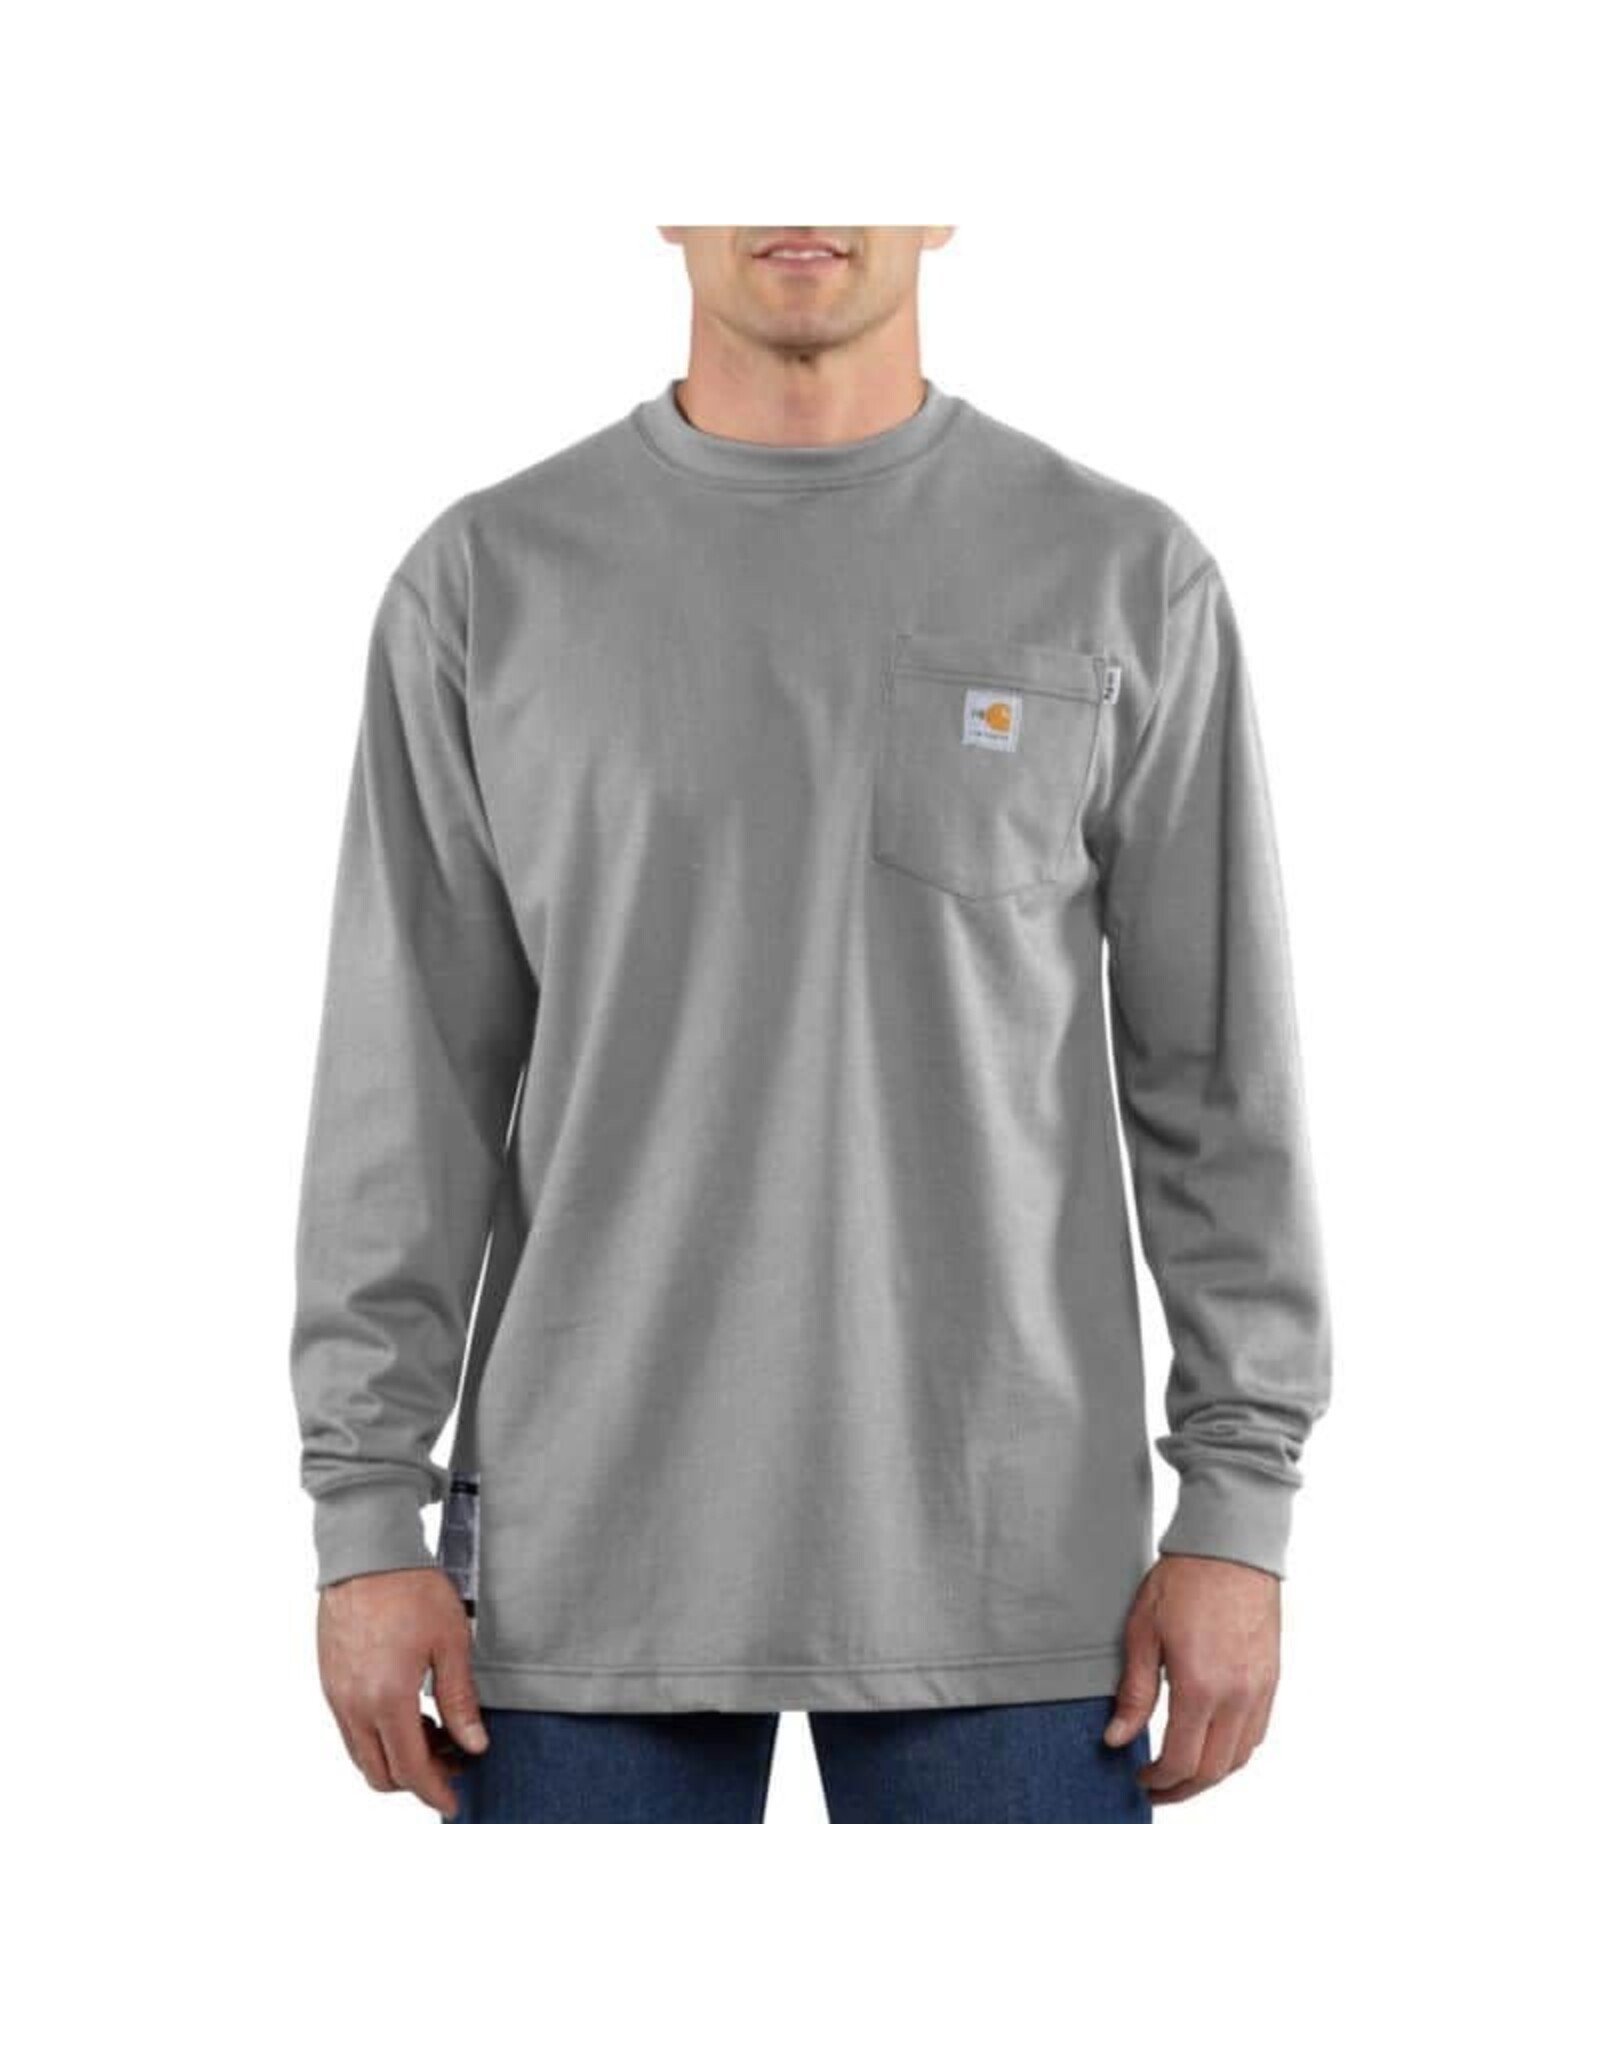 Carhartt Men's FR Force 105783-020 Graphic Long Sleeve Shirt